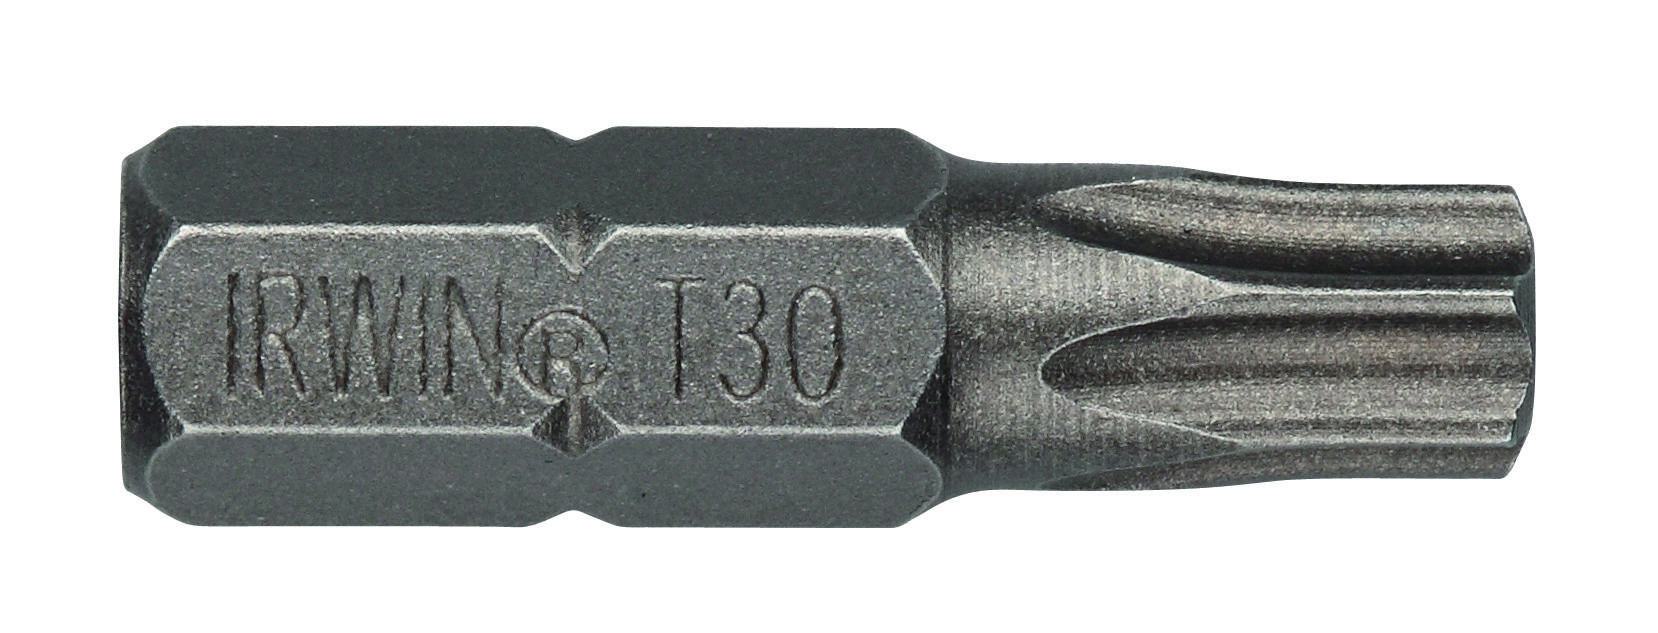 bit nástavec TORX 15  25mm (10ks)  IRWIN 0.09 Kg MAXMIX Sklad14 671142 6